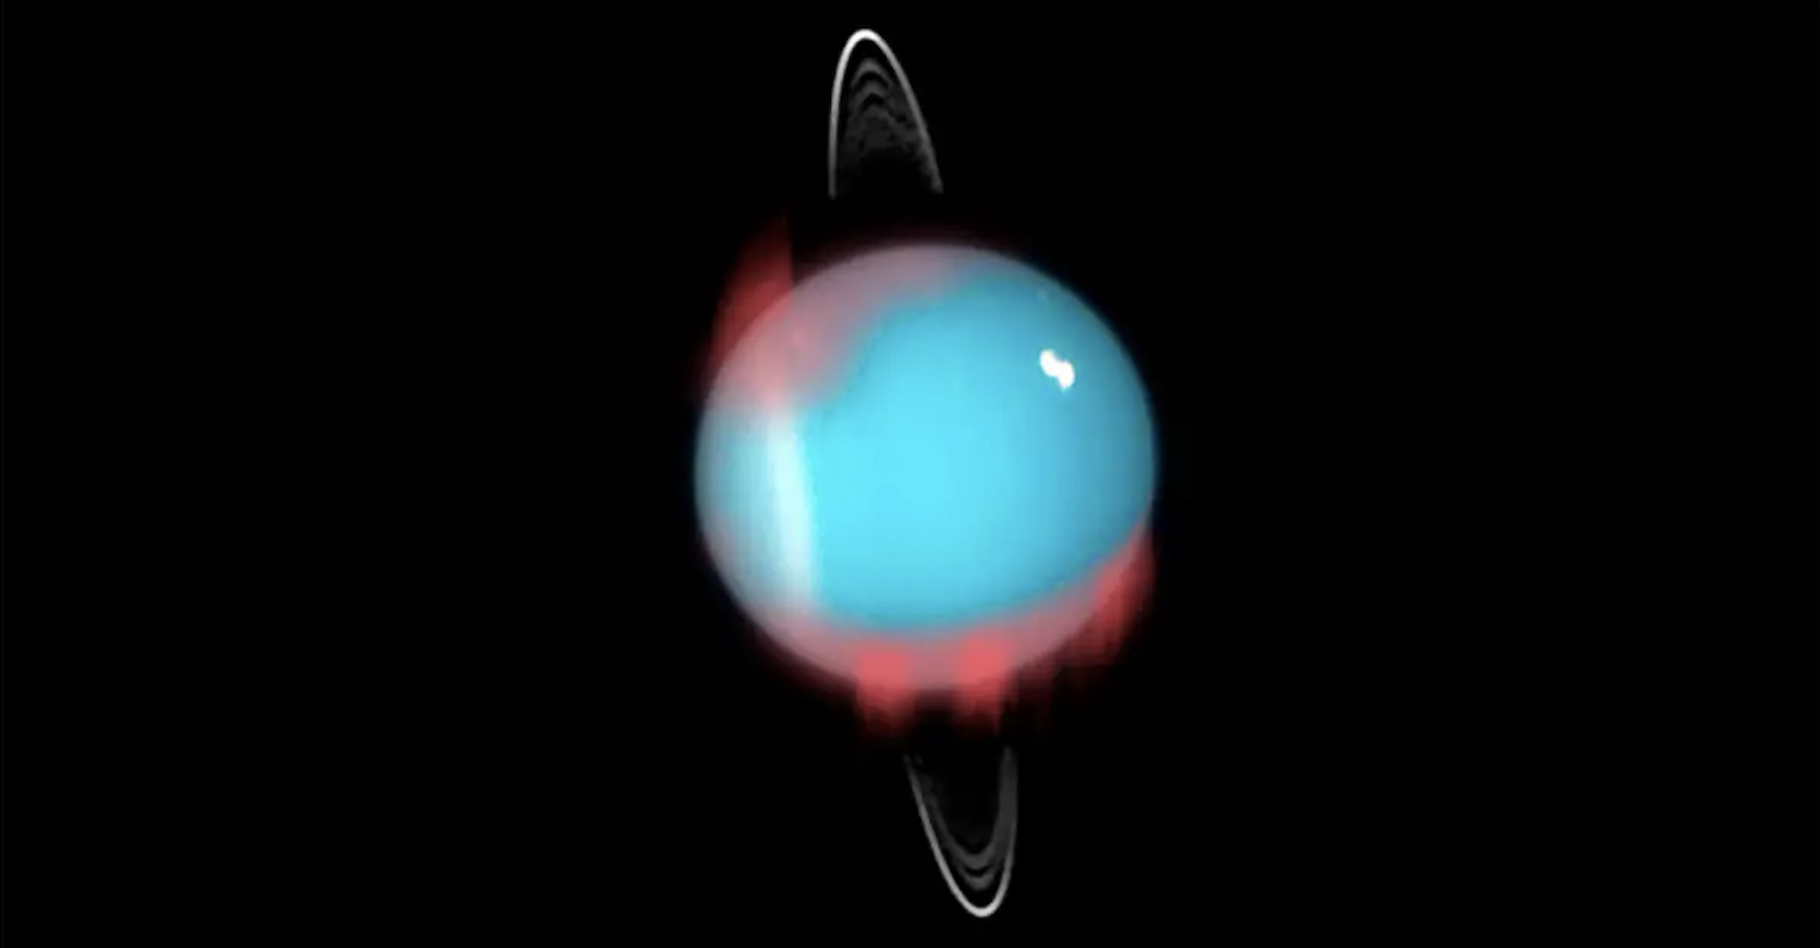 Des chercheurs de l’université de Leicester (Royaume-Uni) ont confirmé la formation d’aurores boréales infrarouges sur Uranus. © Université de Leicester ; Nasa, ESA, M. Showalter (Seti Institute) pour les images d’arrière-plan d’Uranus